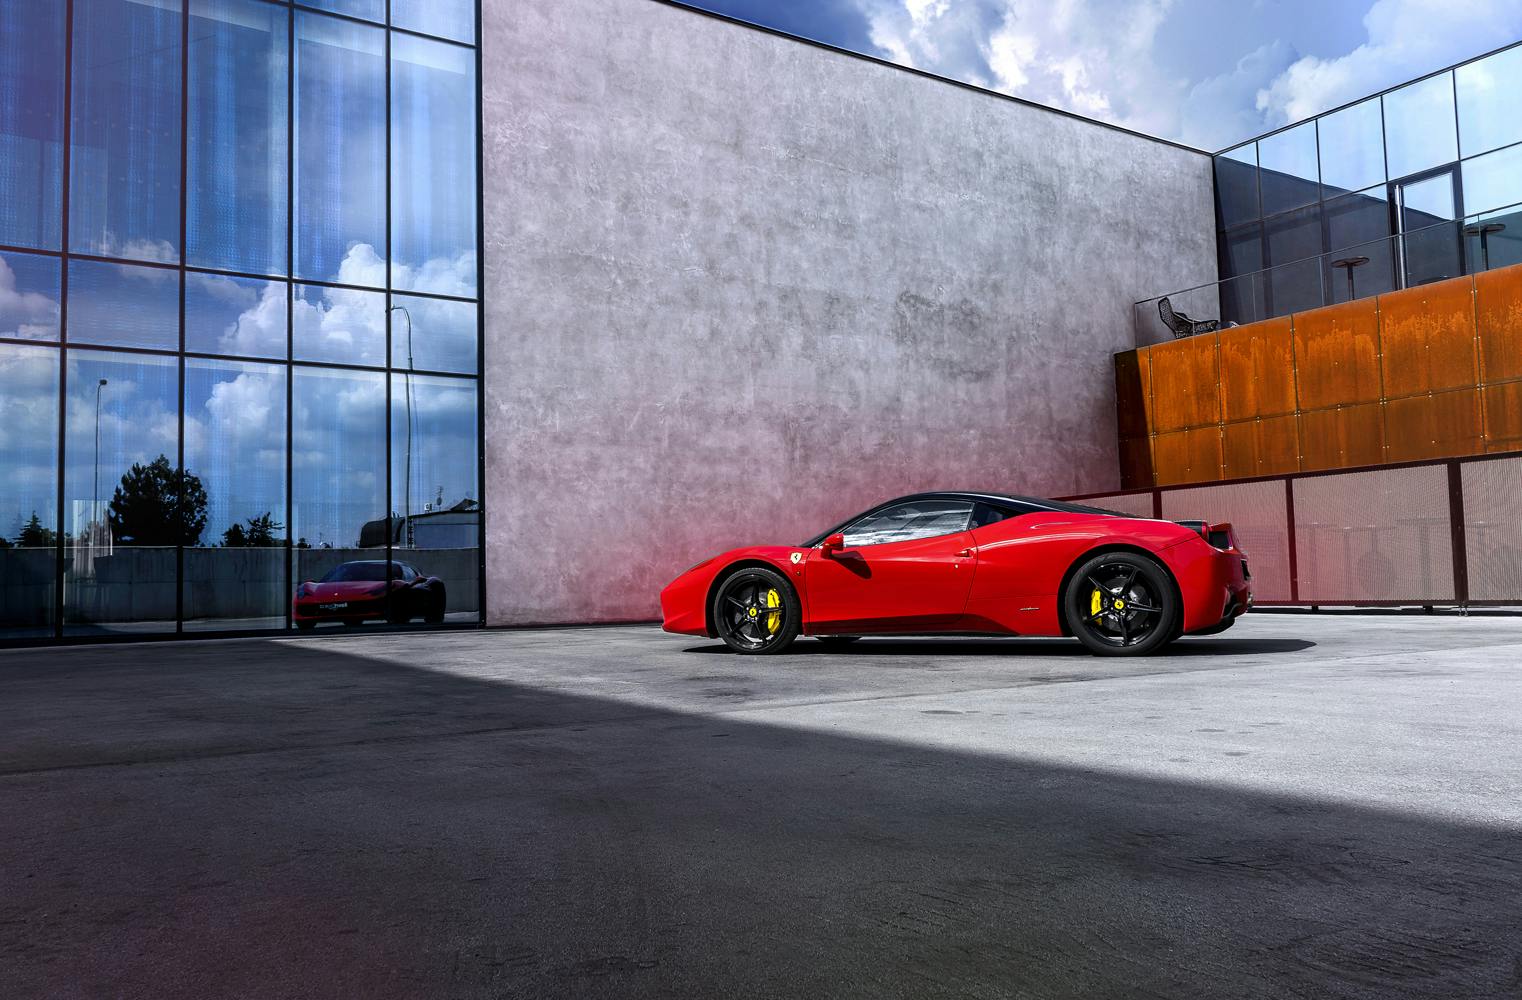 1 Stunde Traumauto fahren | Ferrari 458 Italia selber fahren